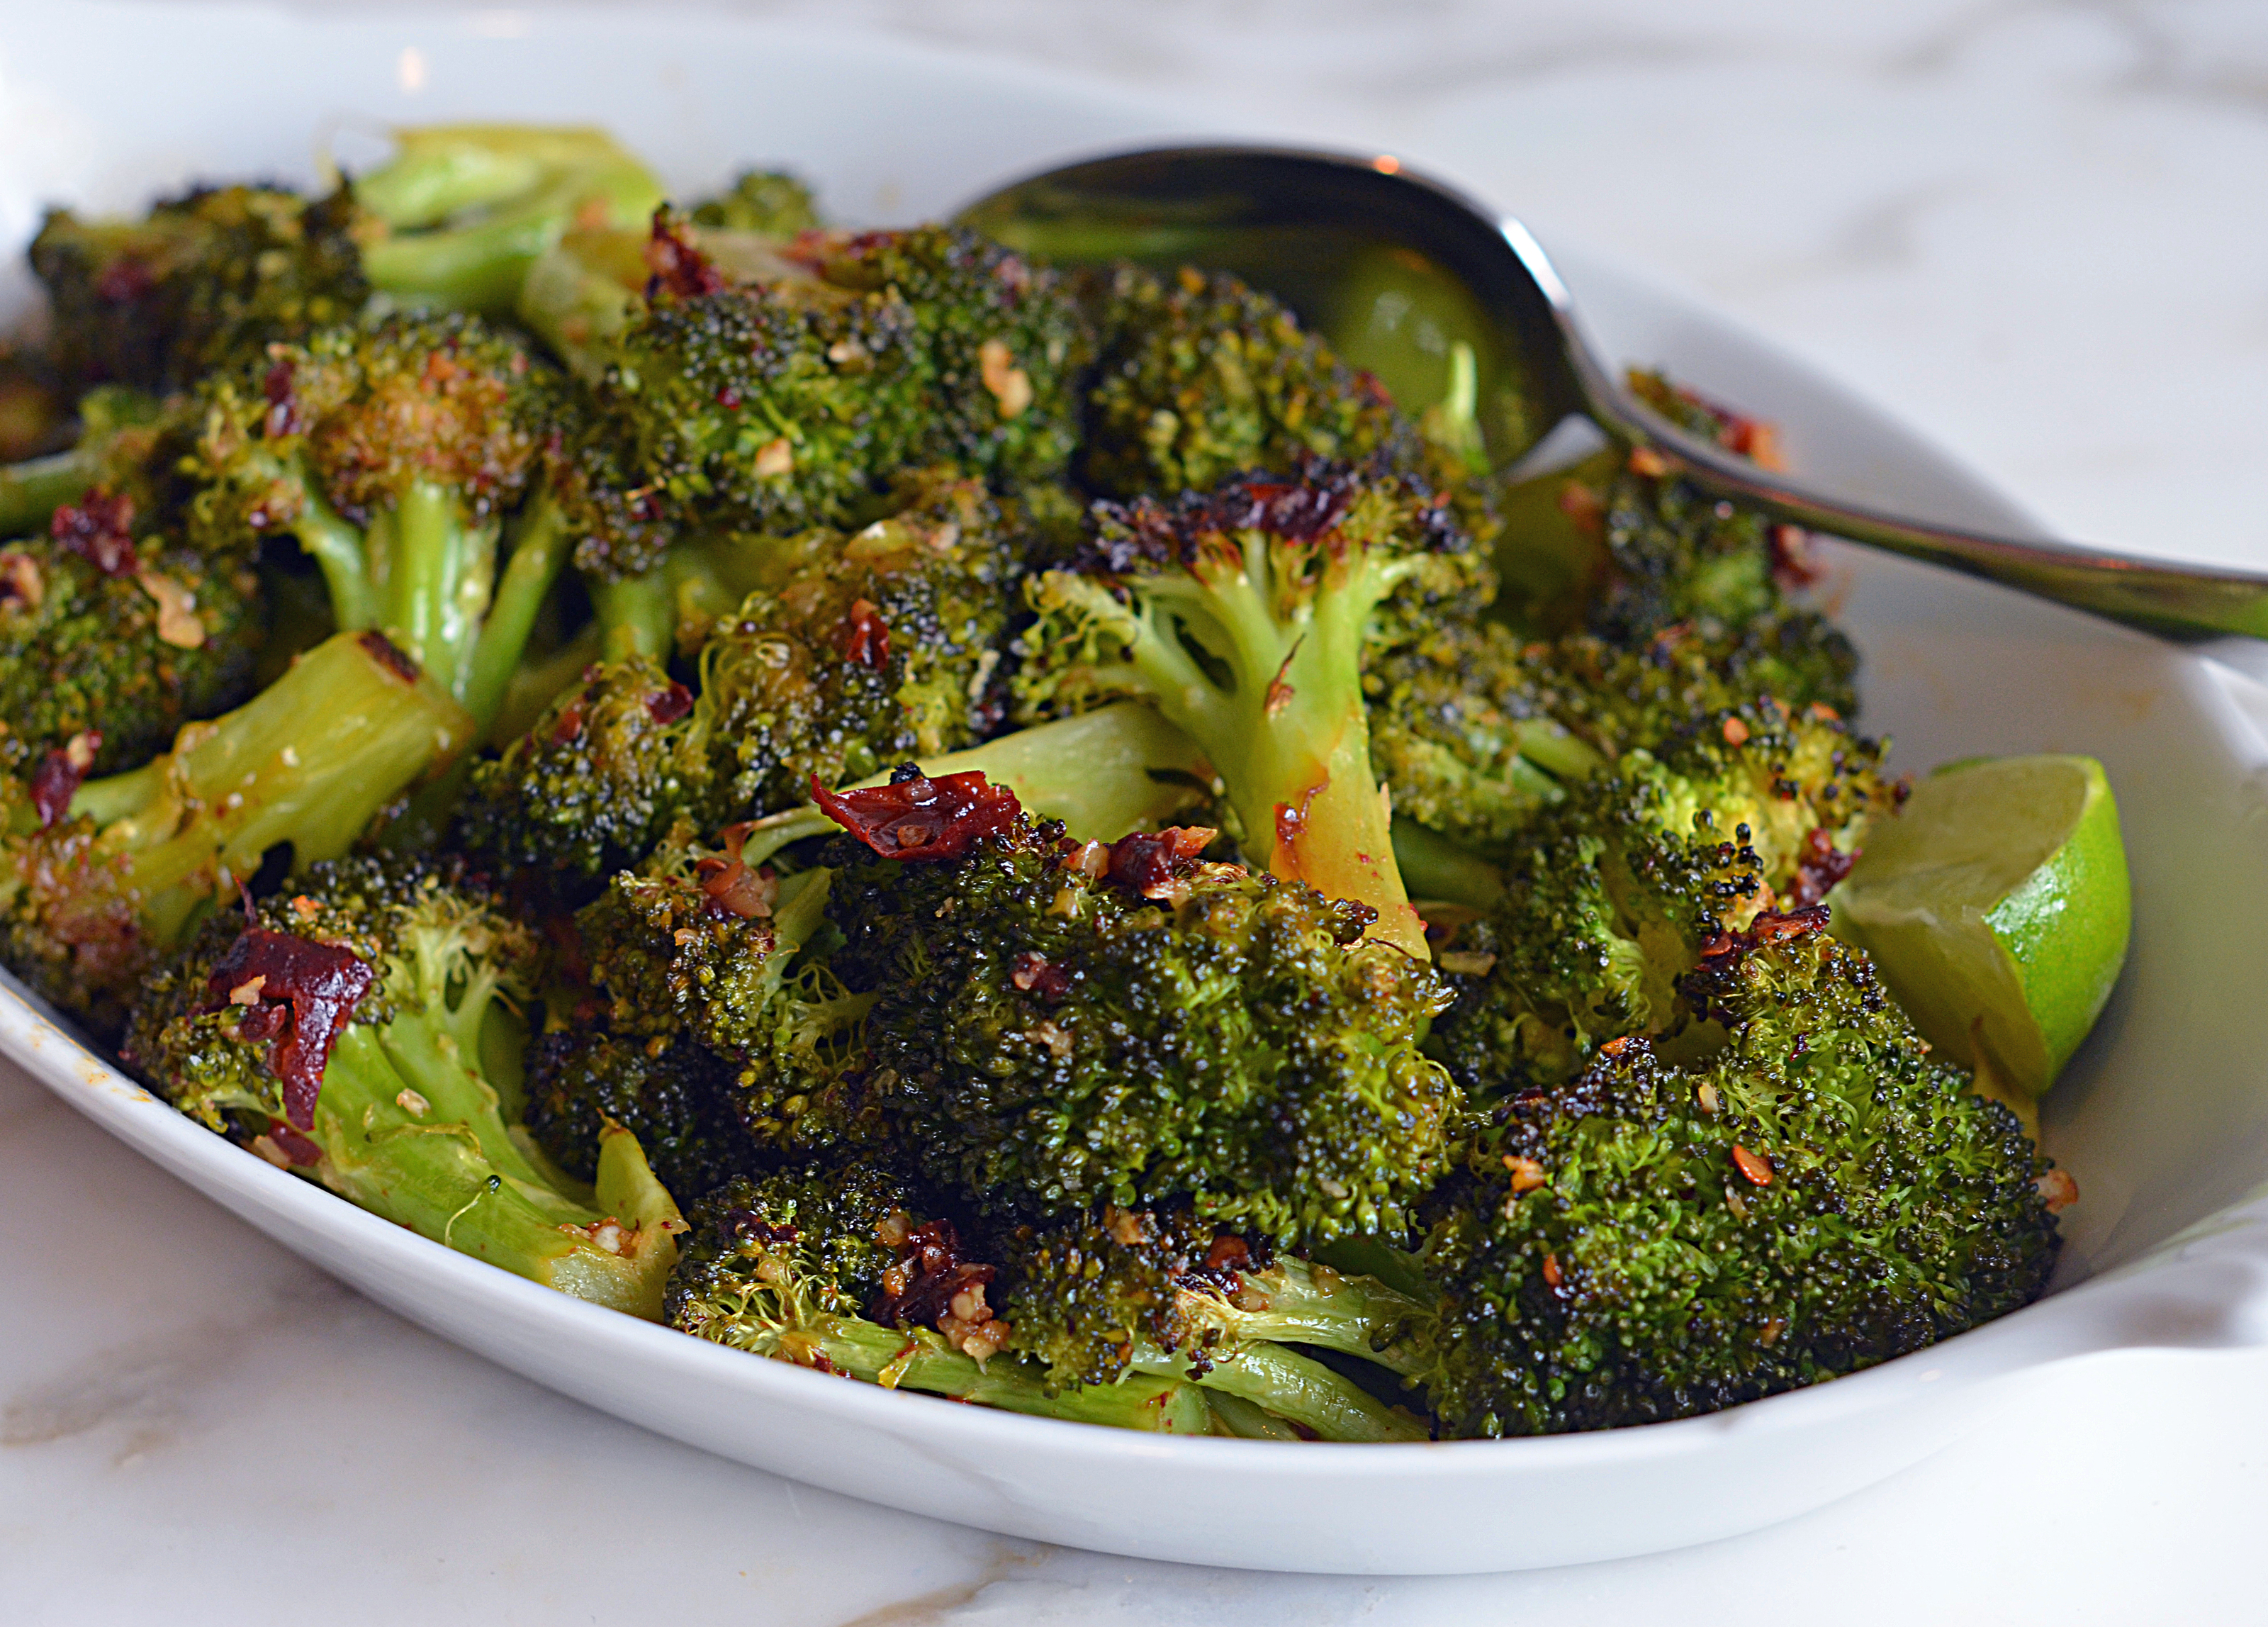 Caramelized Broccoli with Garlic Recipe